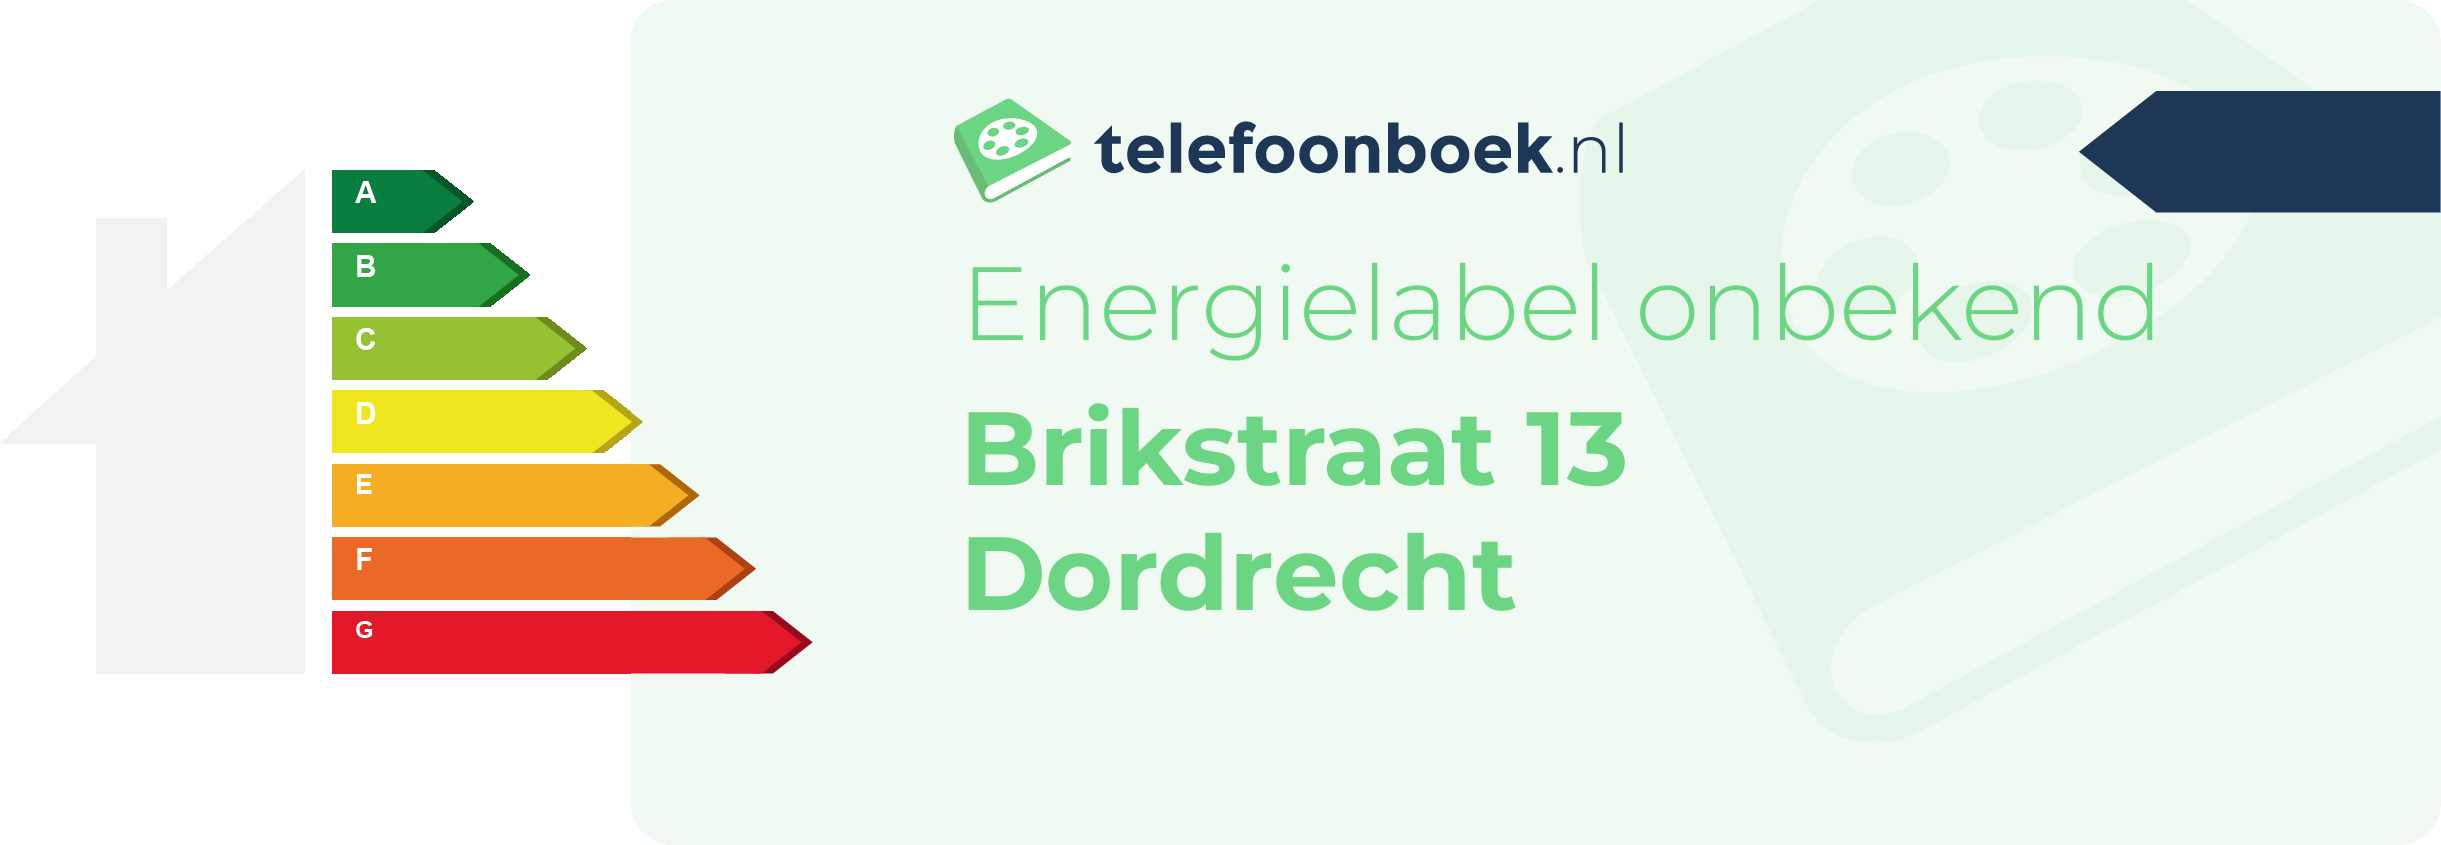 Energielabel Brikstraat 13 Dordrecht